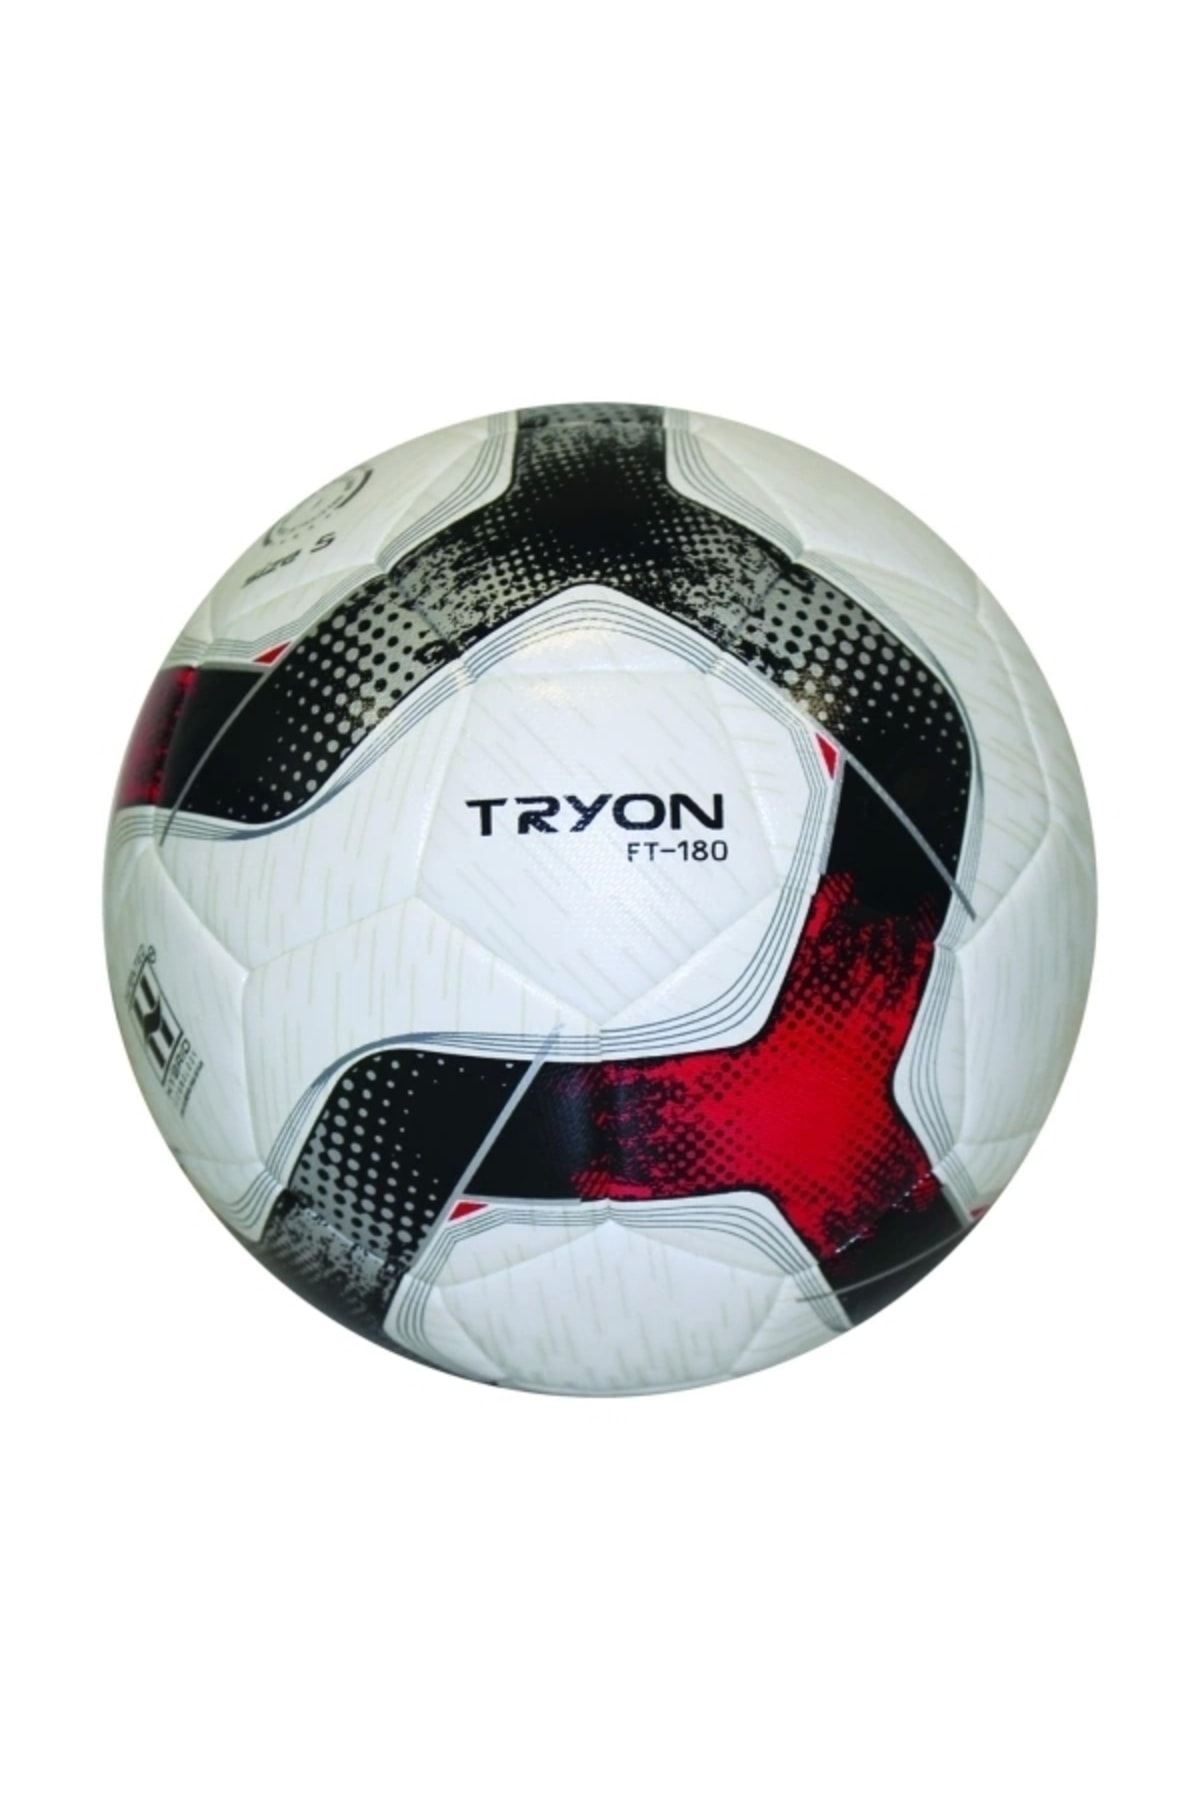 TRYON Ft-180 Kırmızı Futbol Topu 5 Numara